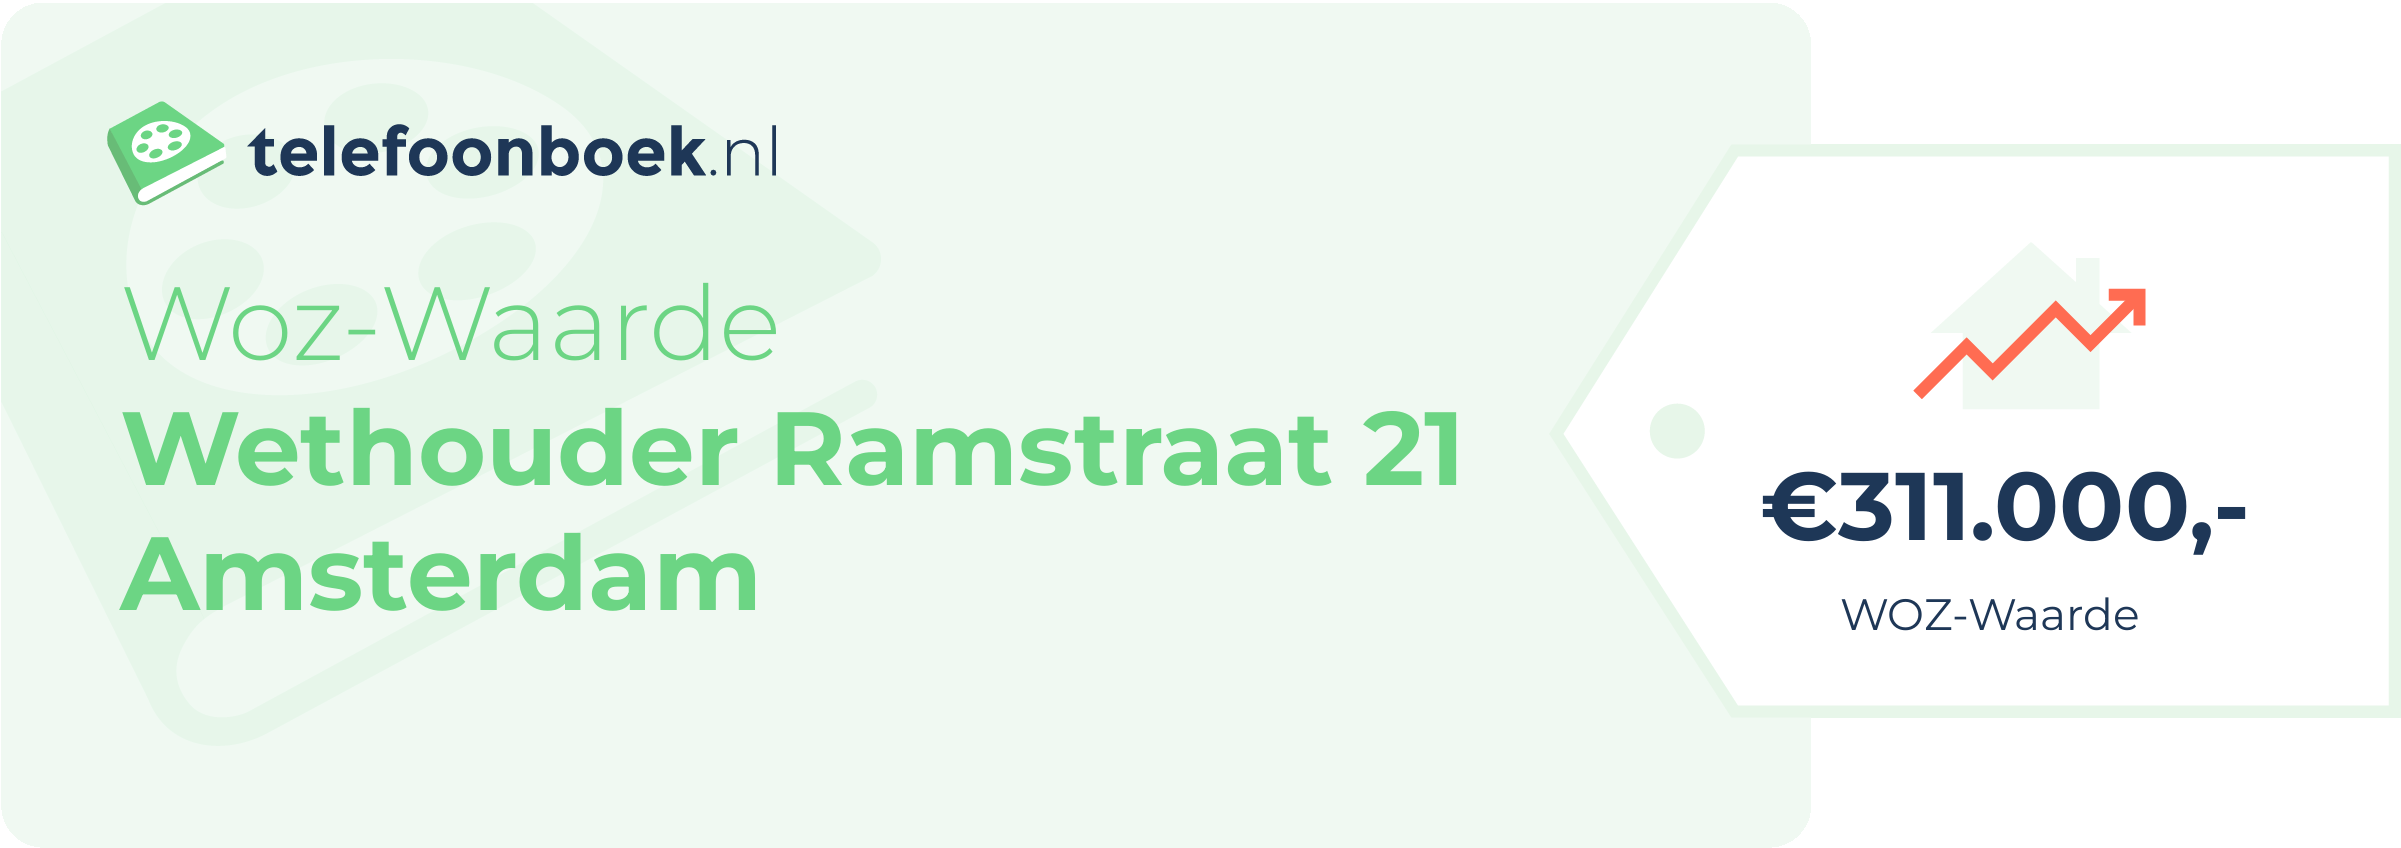 WOZ-waarde Wethouder Ramstraat 21 Amsterdam